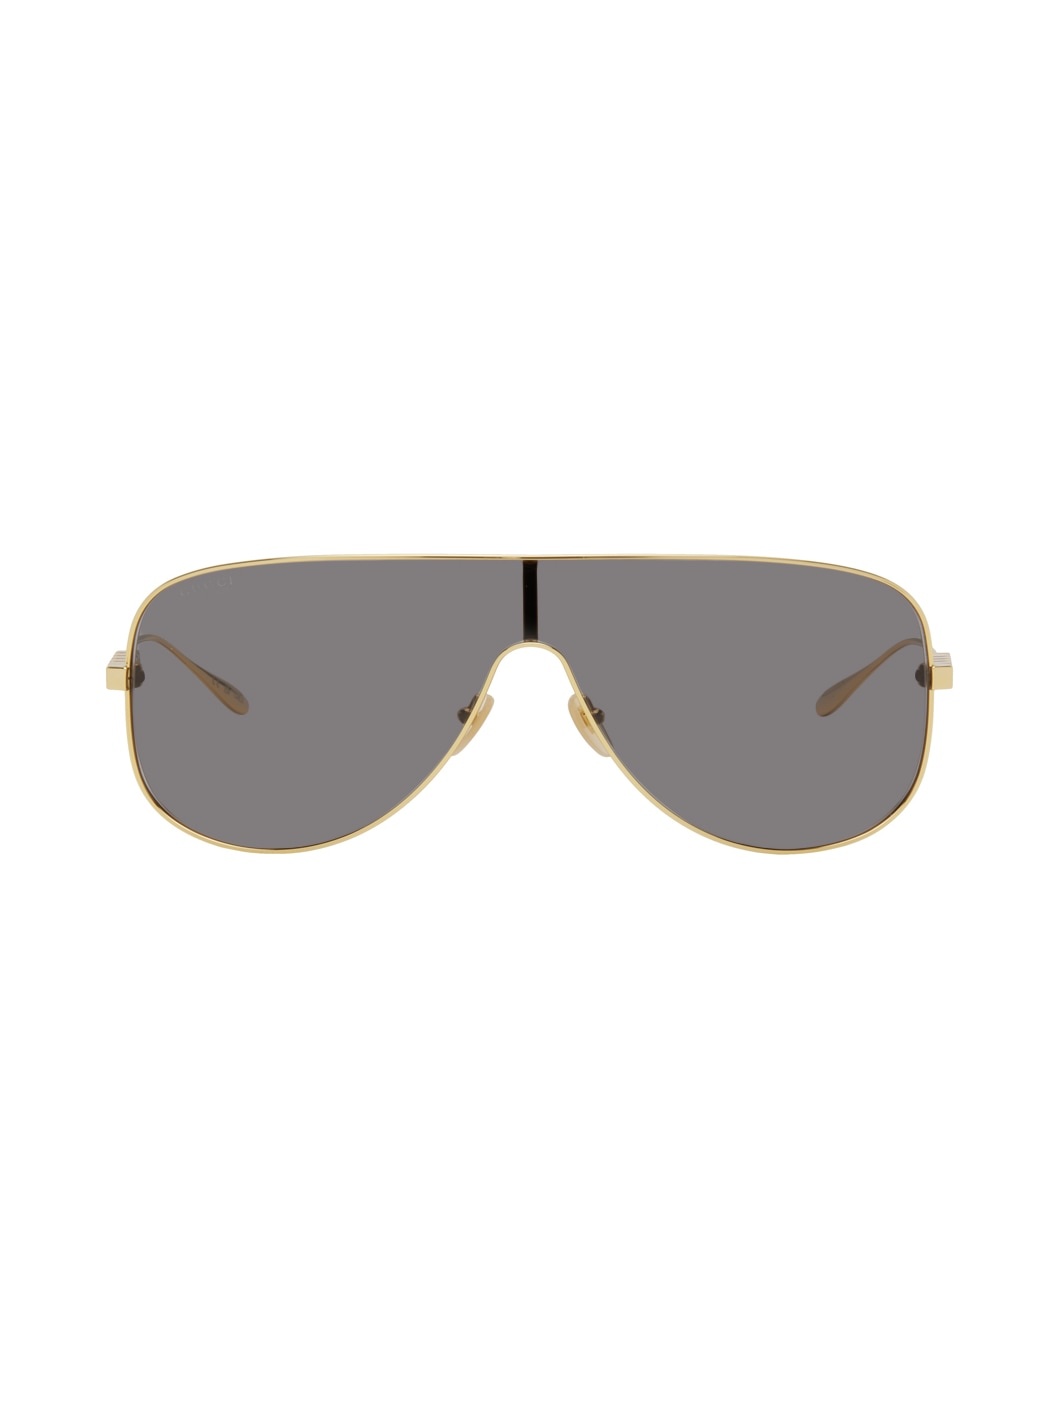 Gold Mask Sunglasses - 1